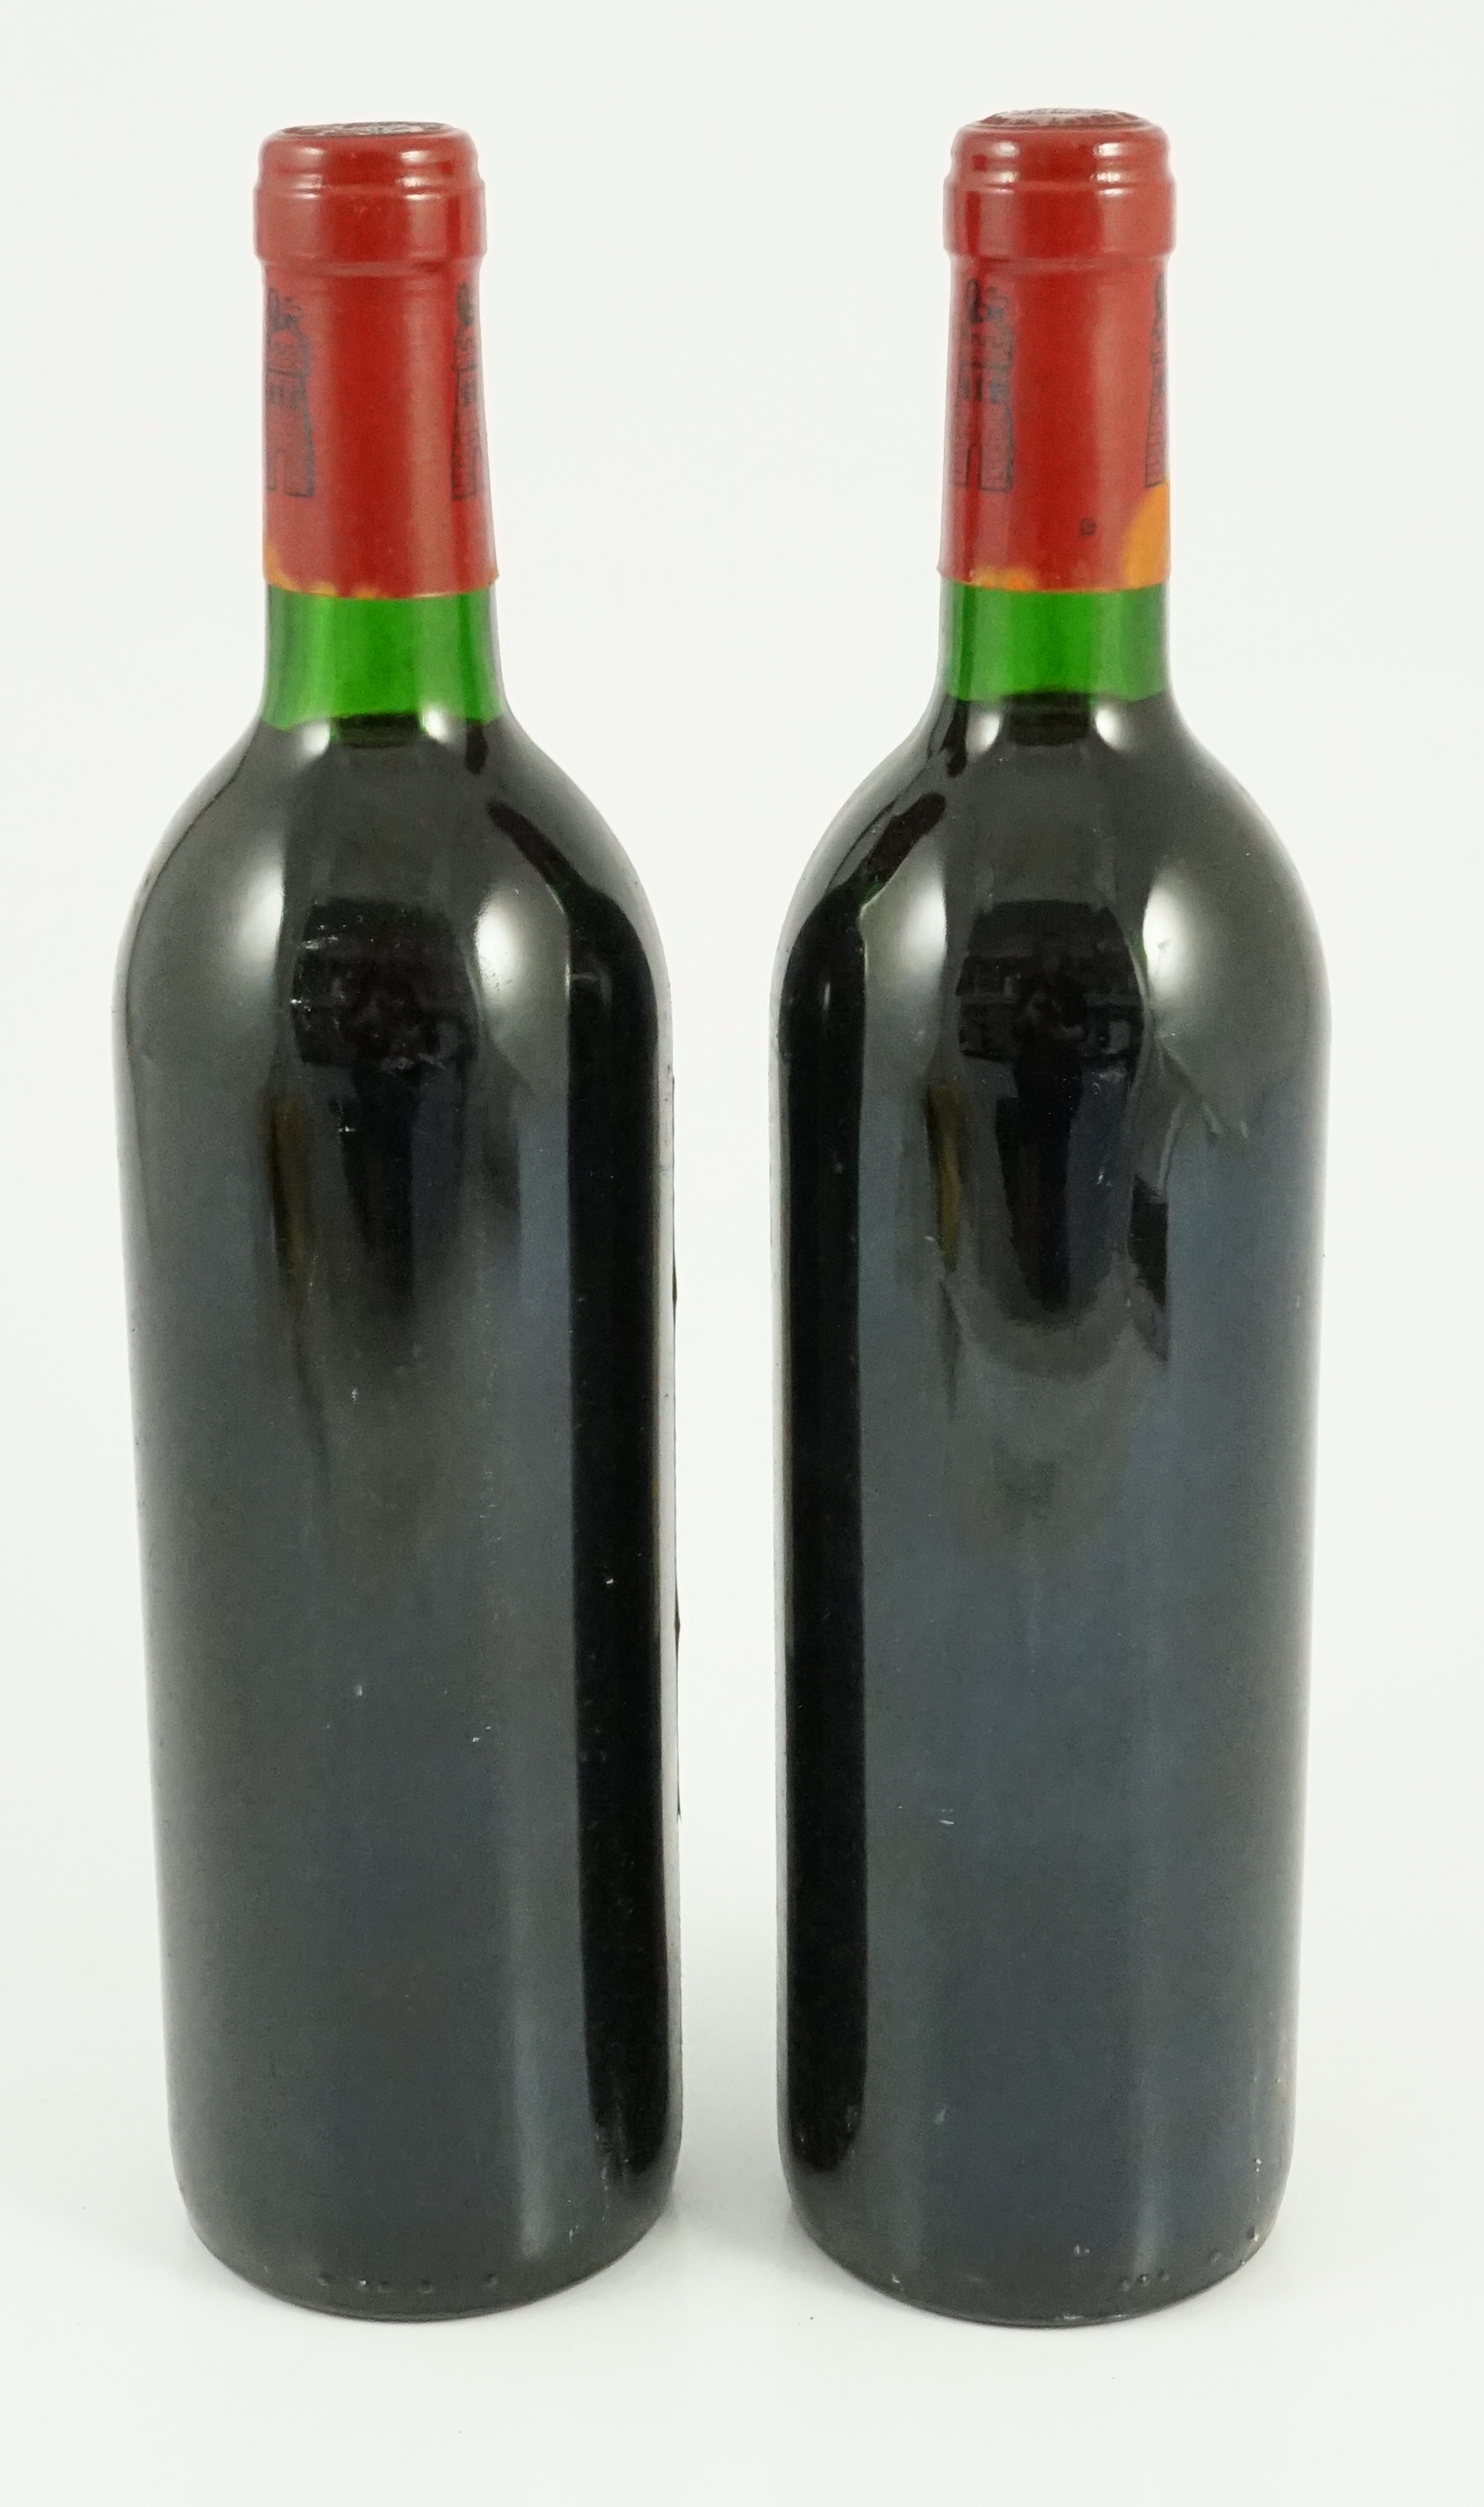 Two bottles of 75cl Grand Vin de Chateau Latour Premier Grand Cru Classé Pauillac, 1990